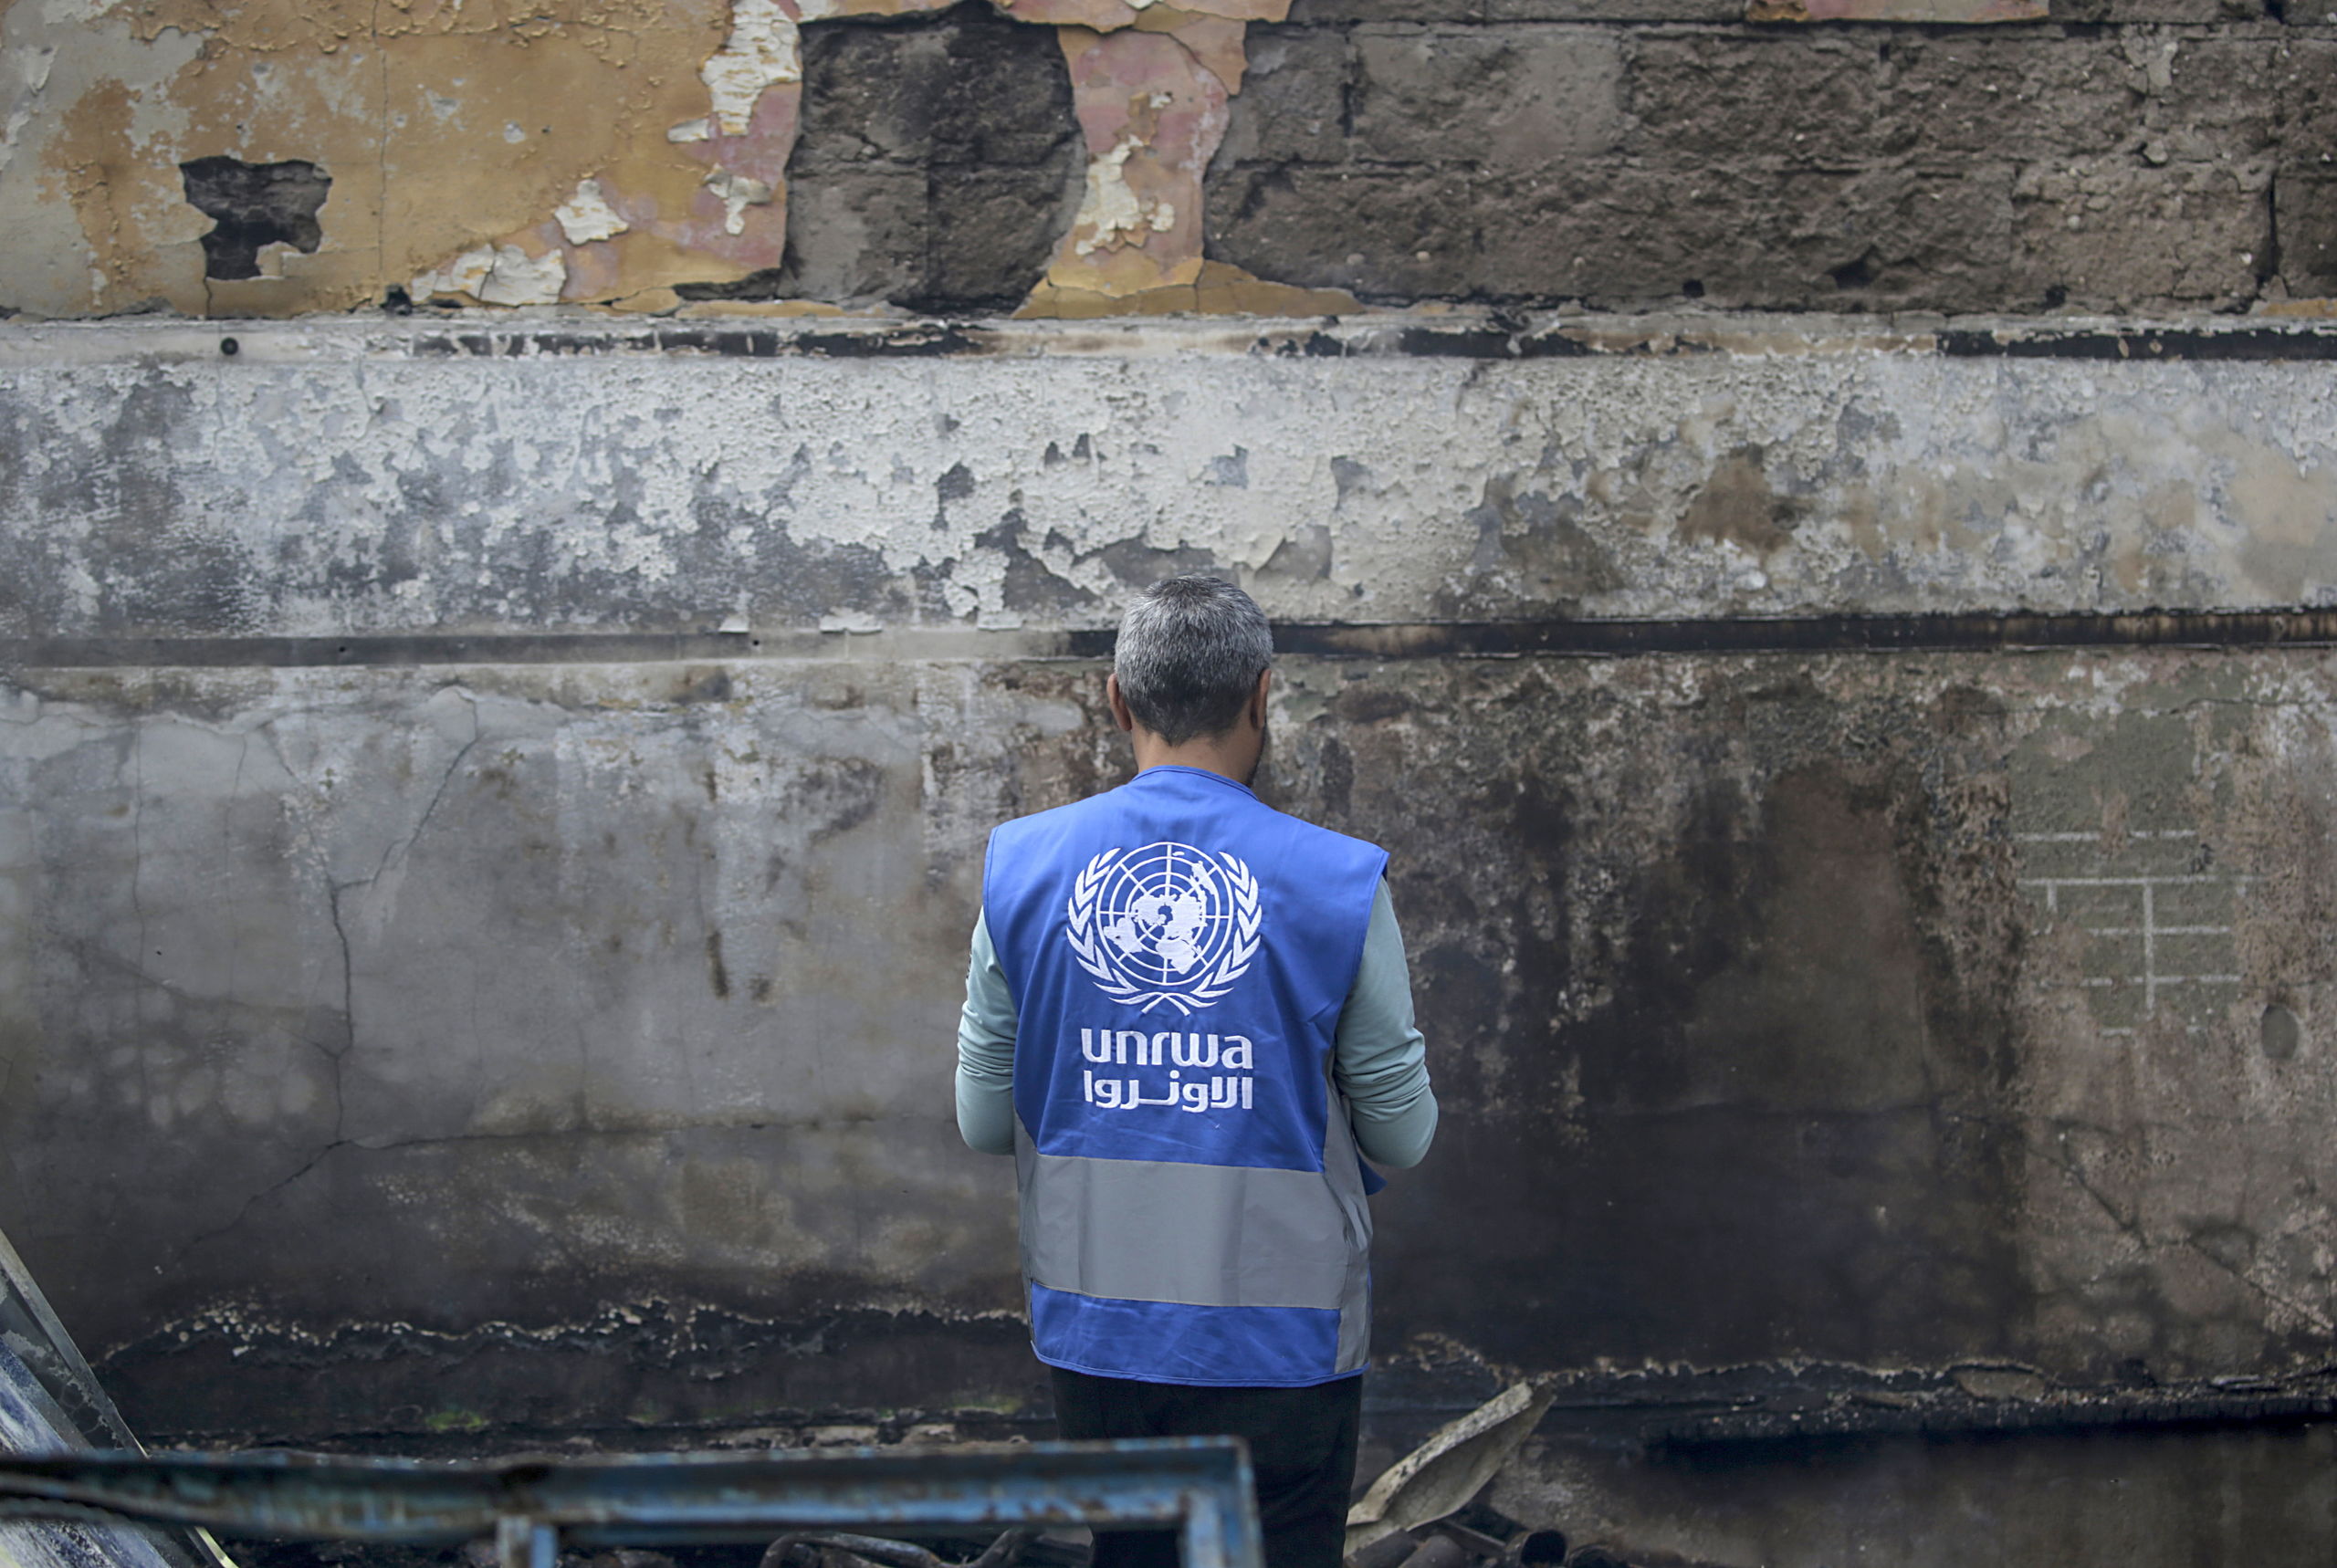 La ONU reconoce que las cifras de fallecidos en Gaza que daba Hamás son totalmente falsas